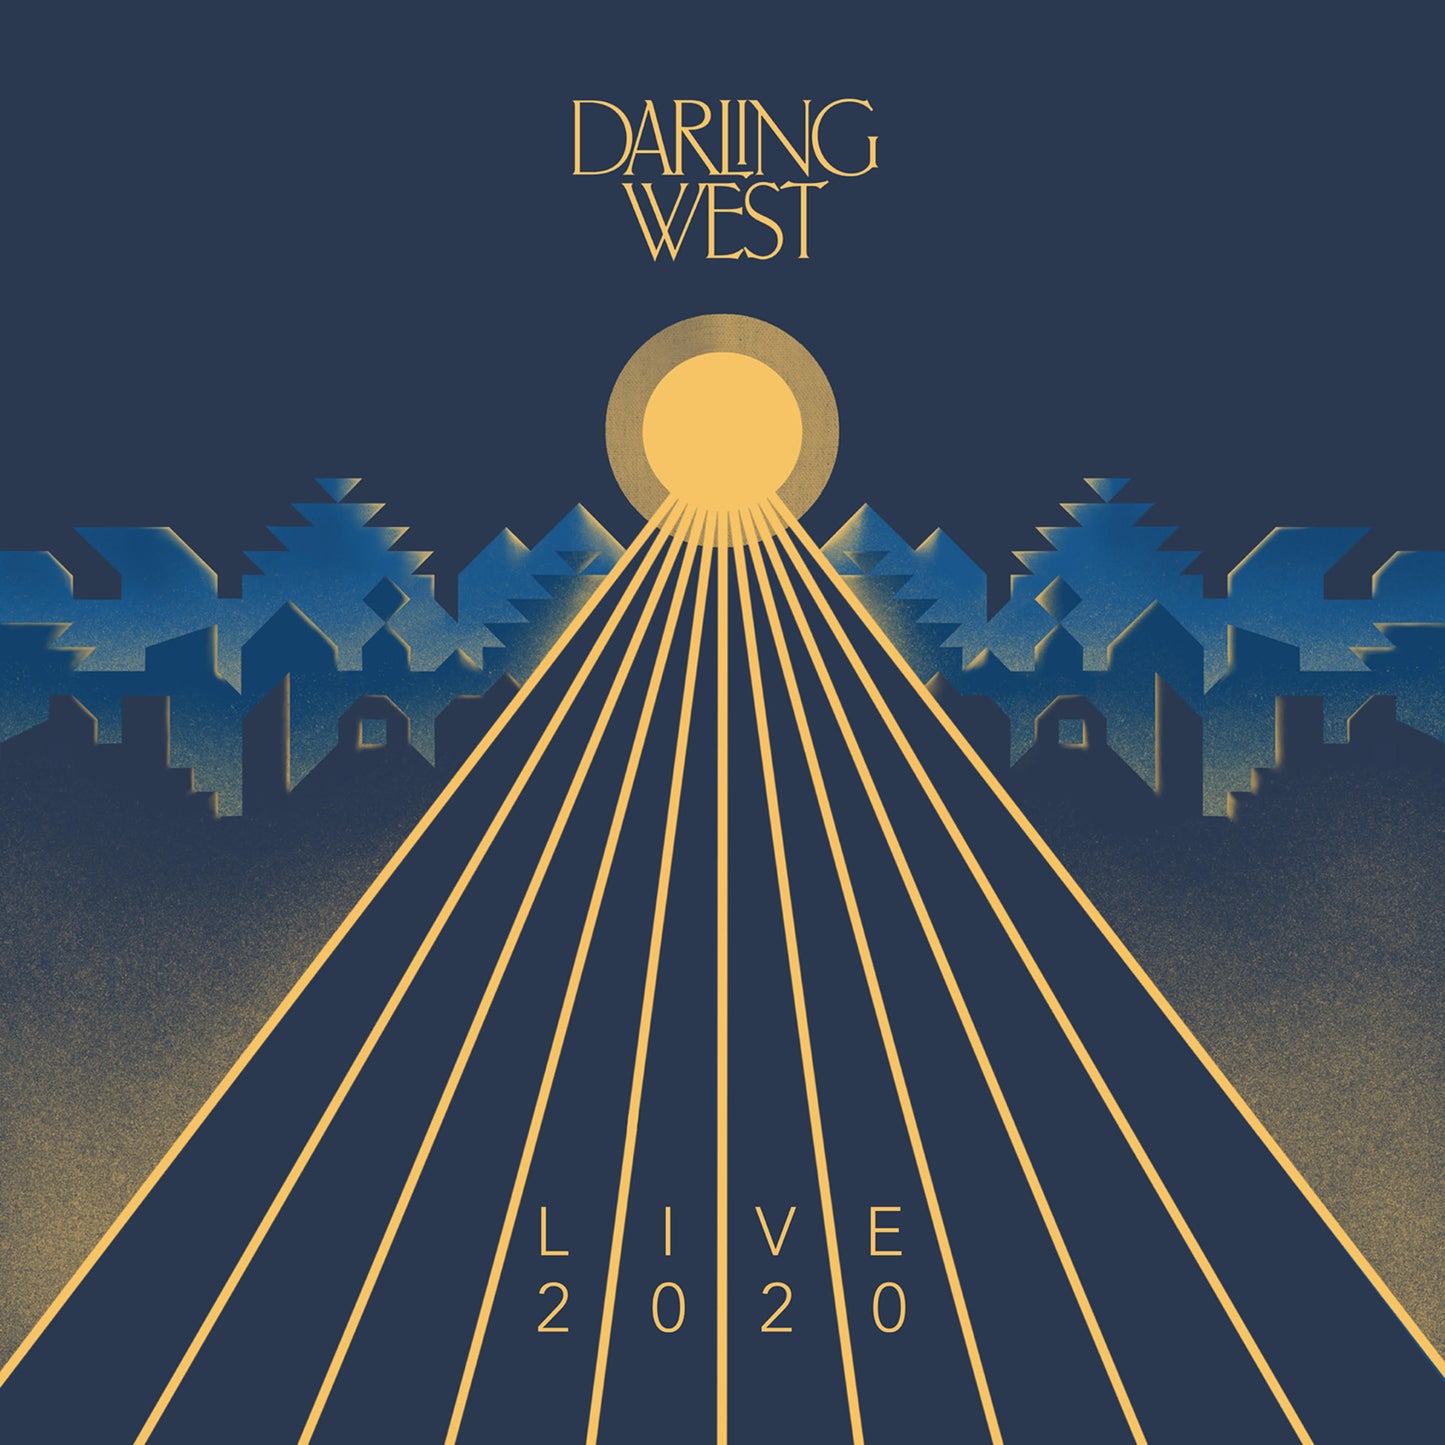 Darling West - Live 2020 (Gold LP)